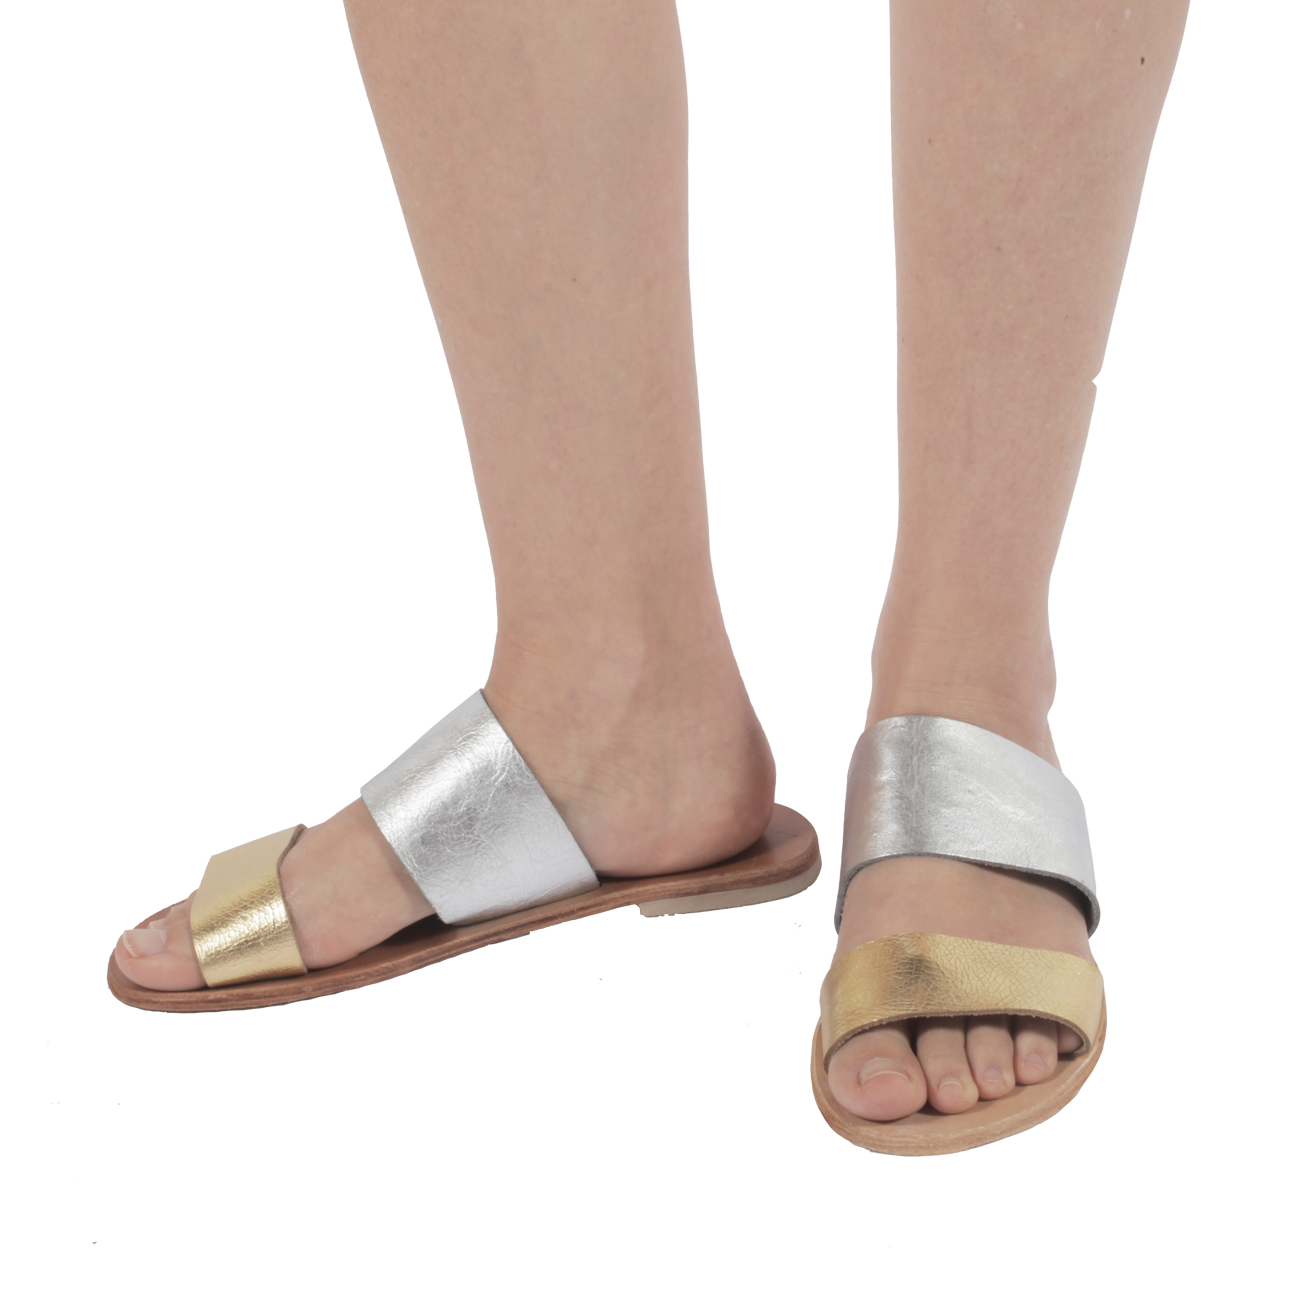 Tulum Sandals